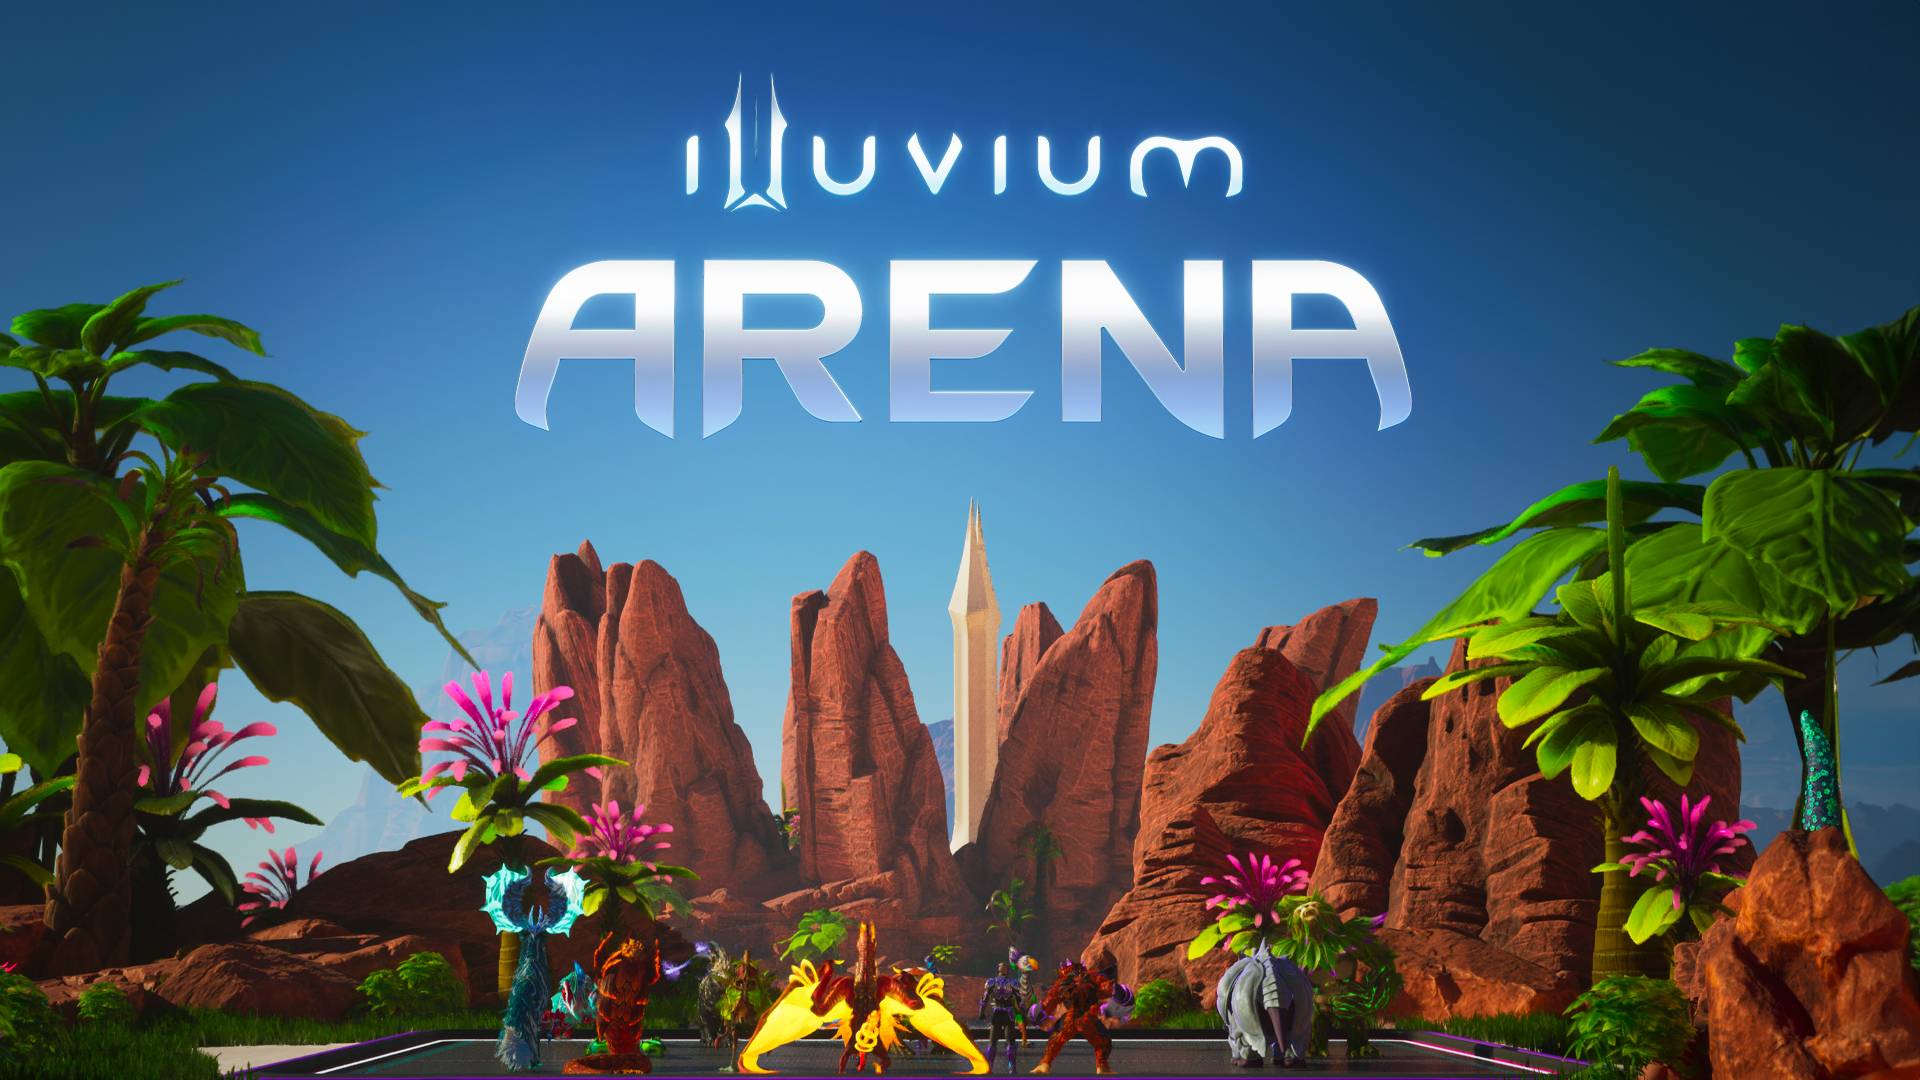 Illuvium&#39;s epische debuut: een mijlpaal voor Blockchain Gaming!